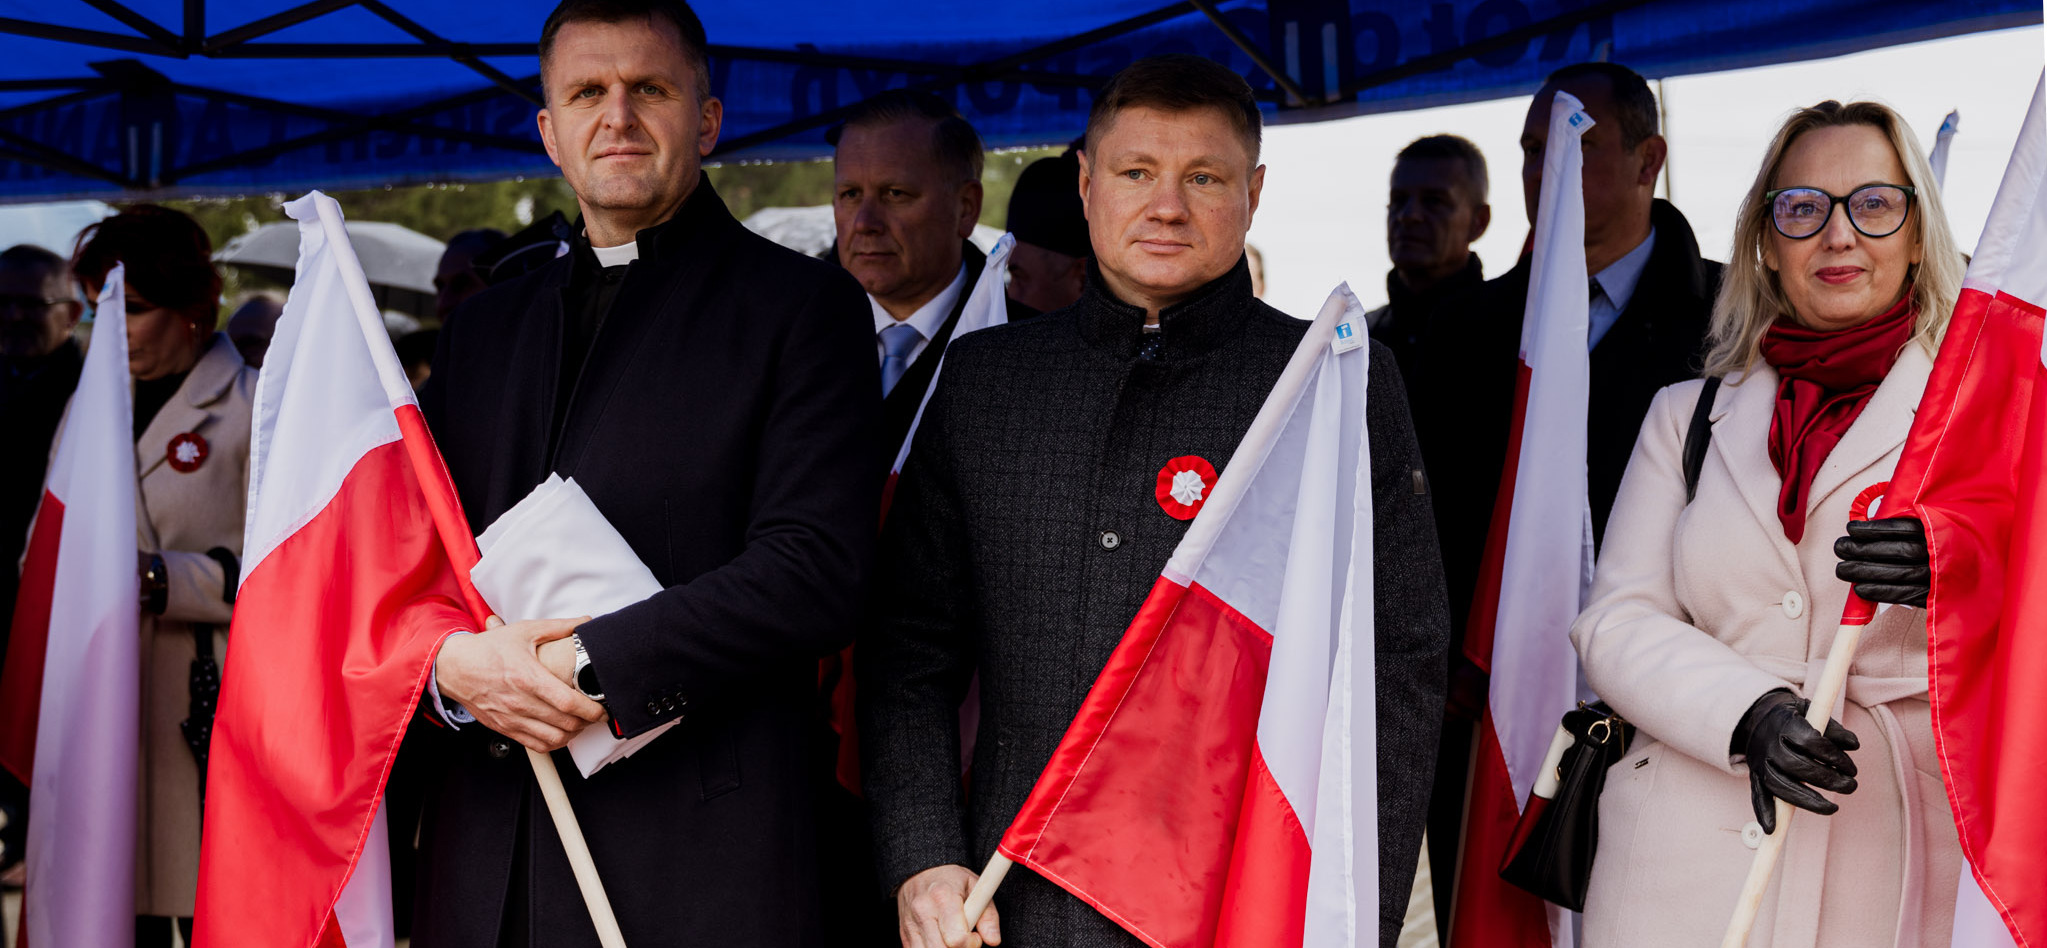 Marszałek Malinowski wraz z oficjelami w trakcie uroczystości